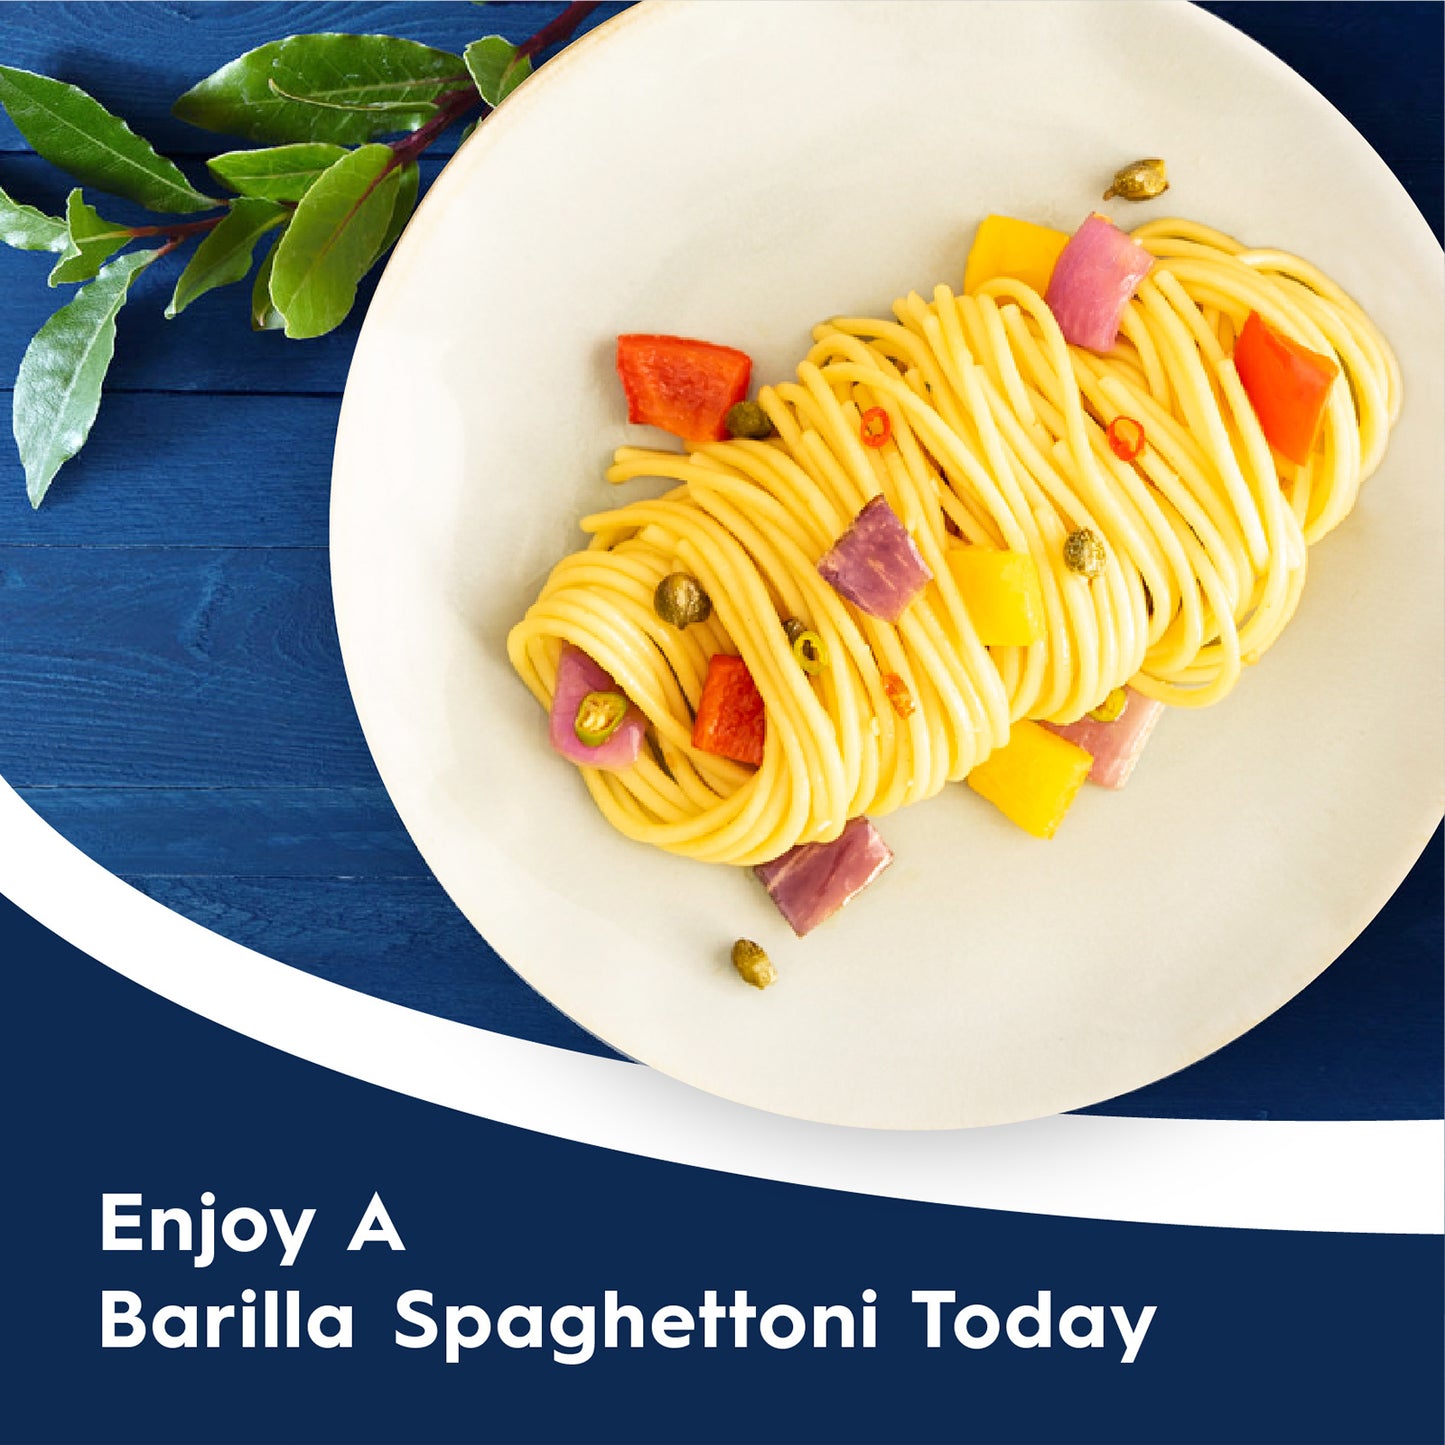 Barilla Pasta Spaghettoni N7 500g (3X500G)